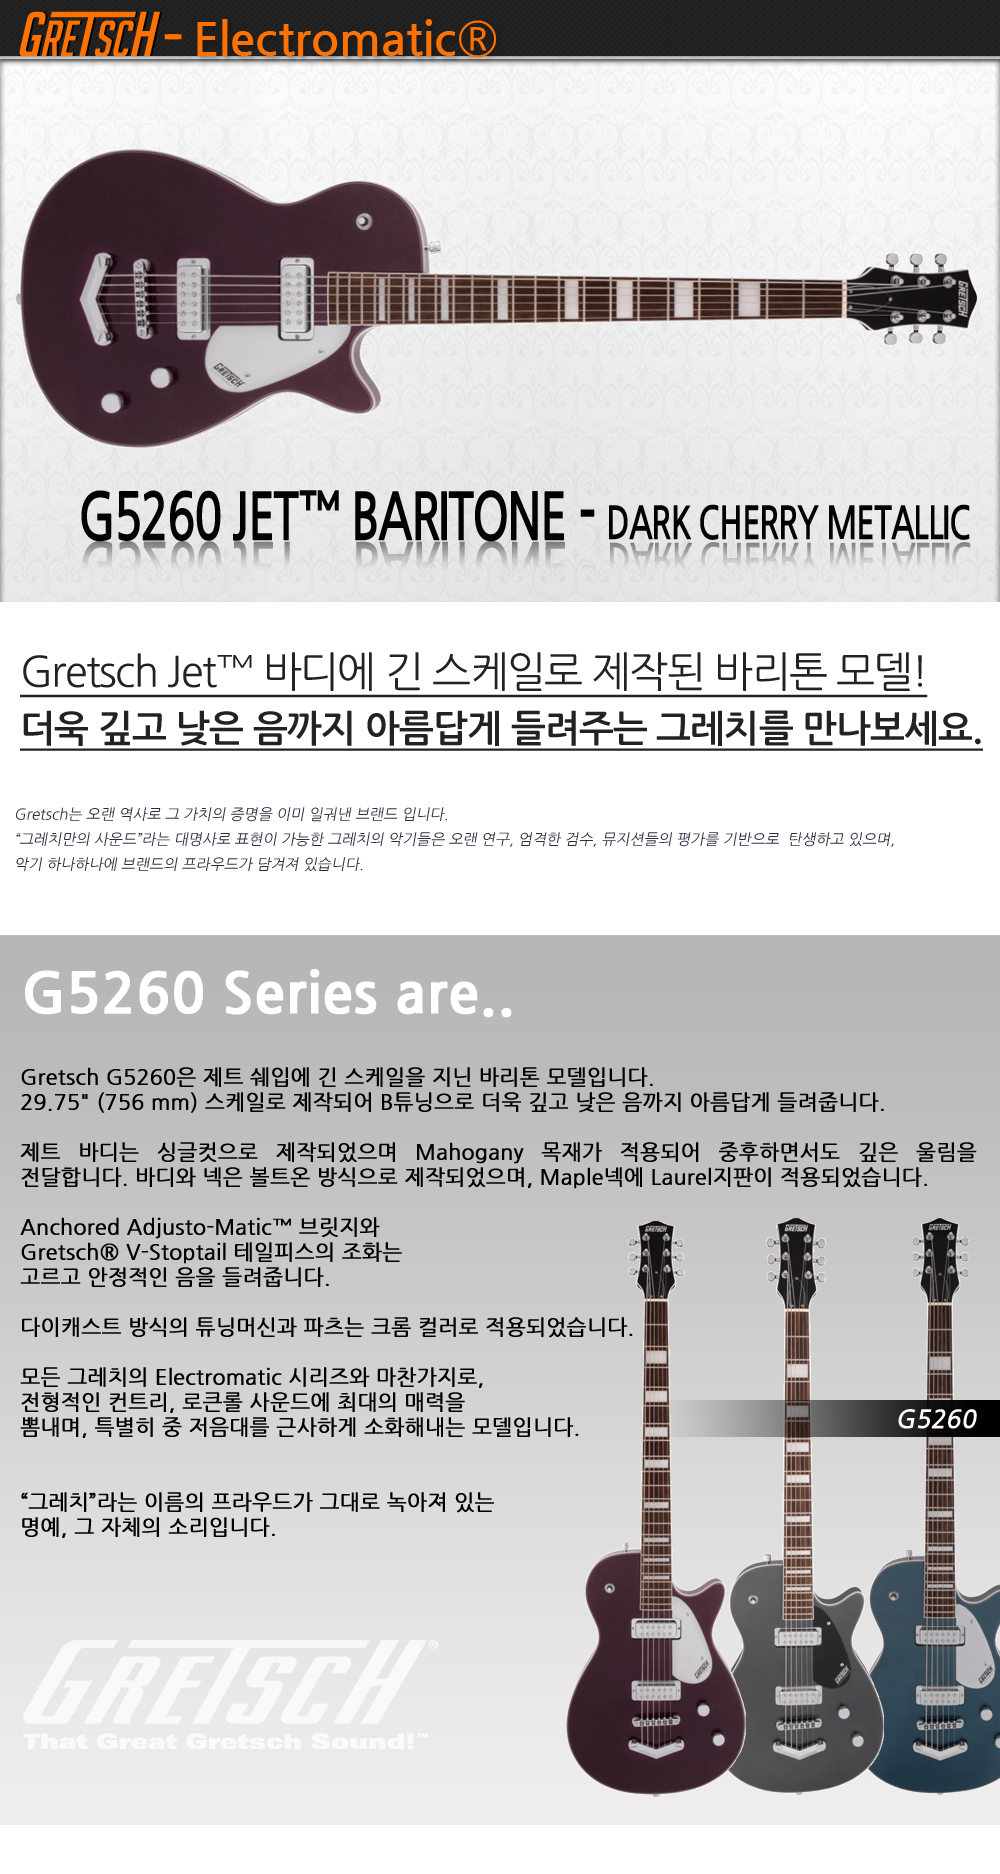 Gretsch-G5260-DarkCherryMetallic_1_155106.jpg